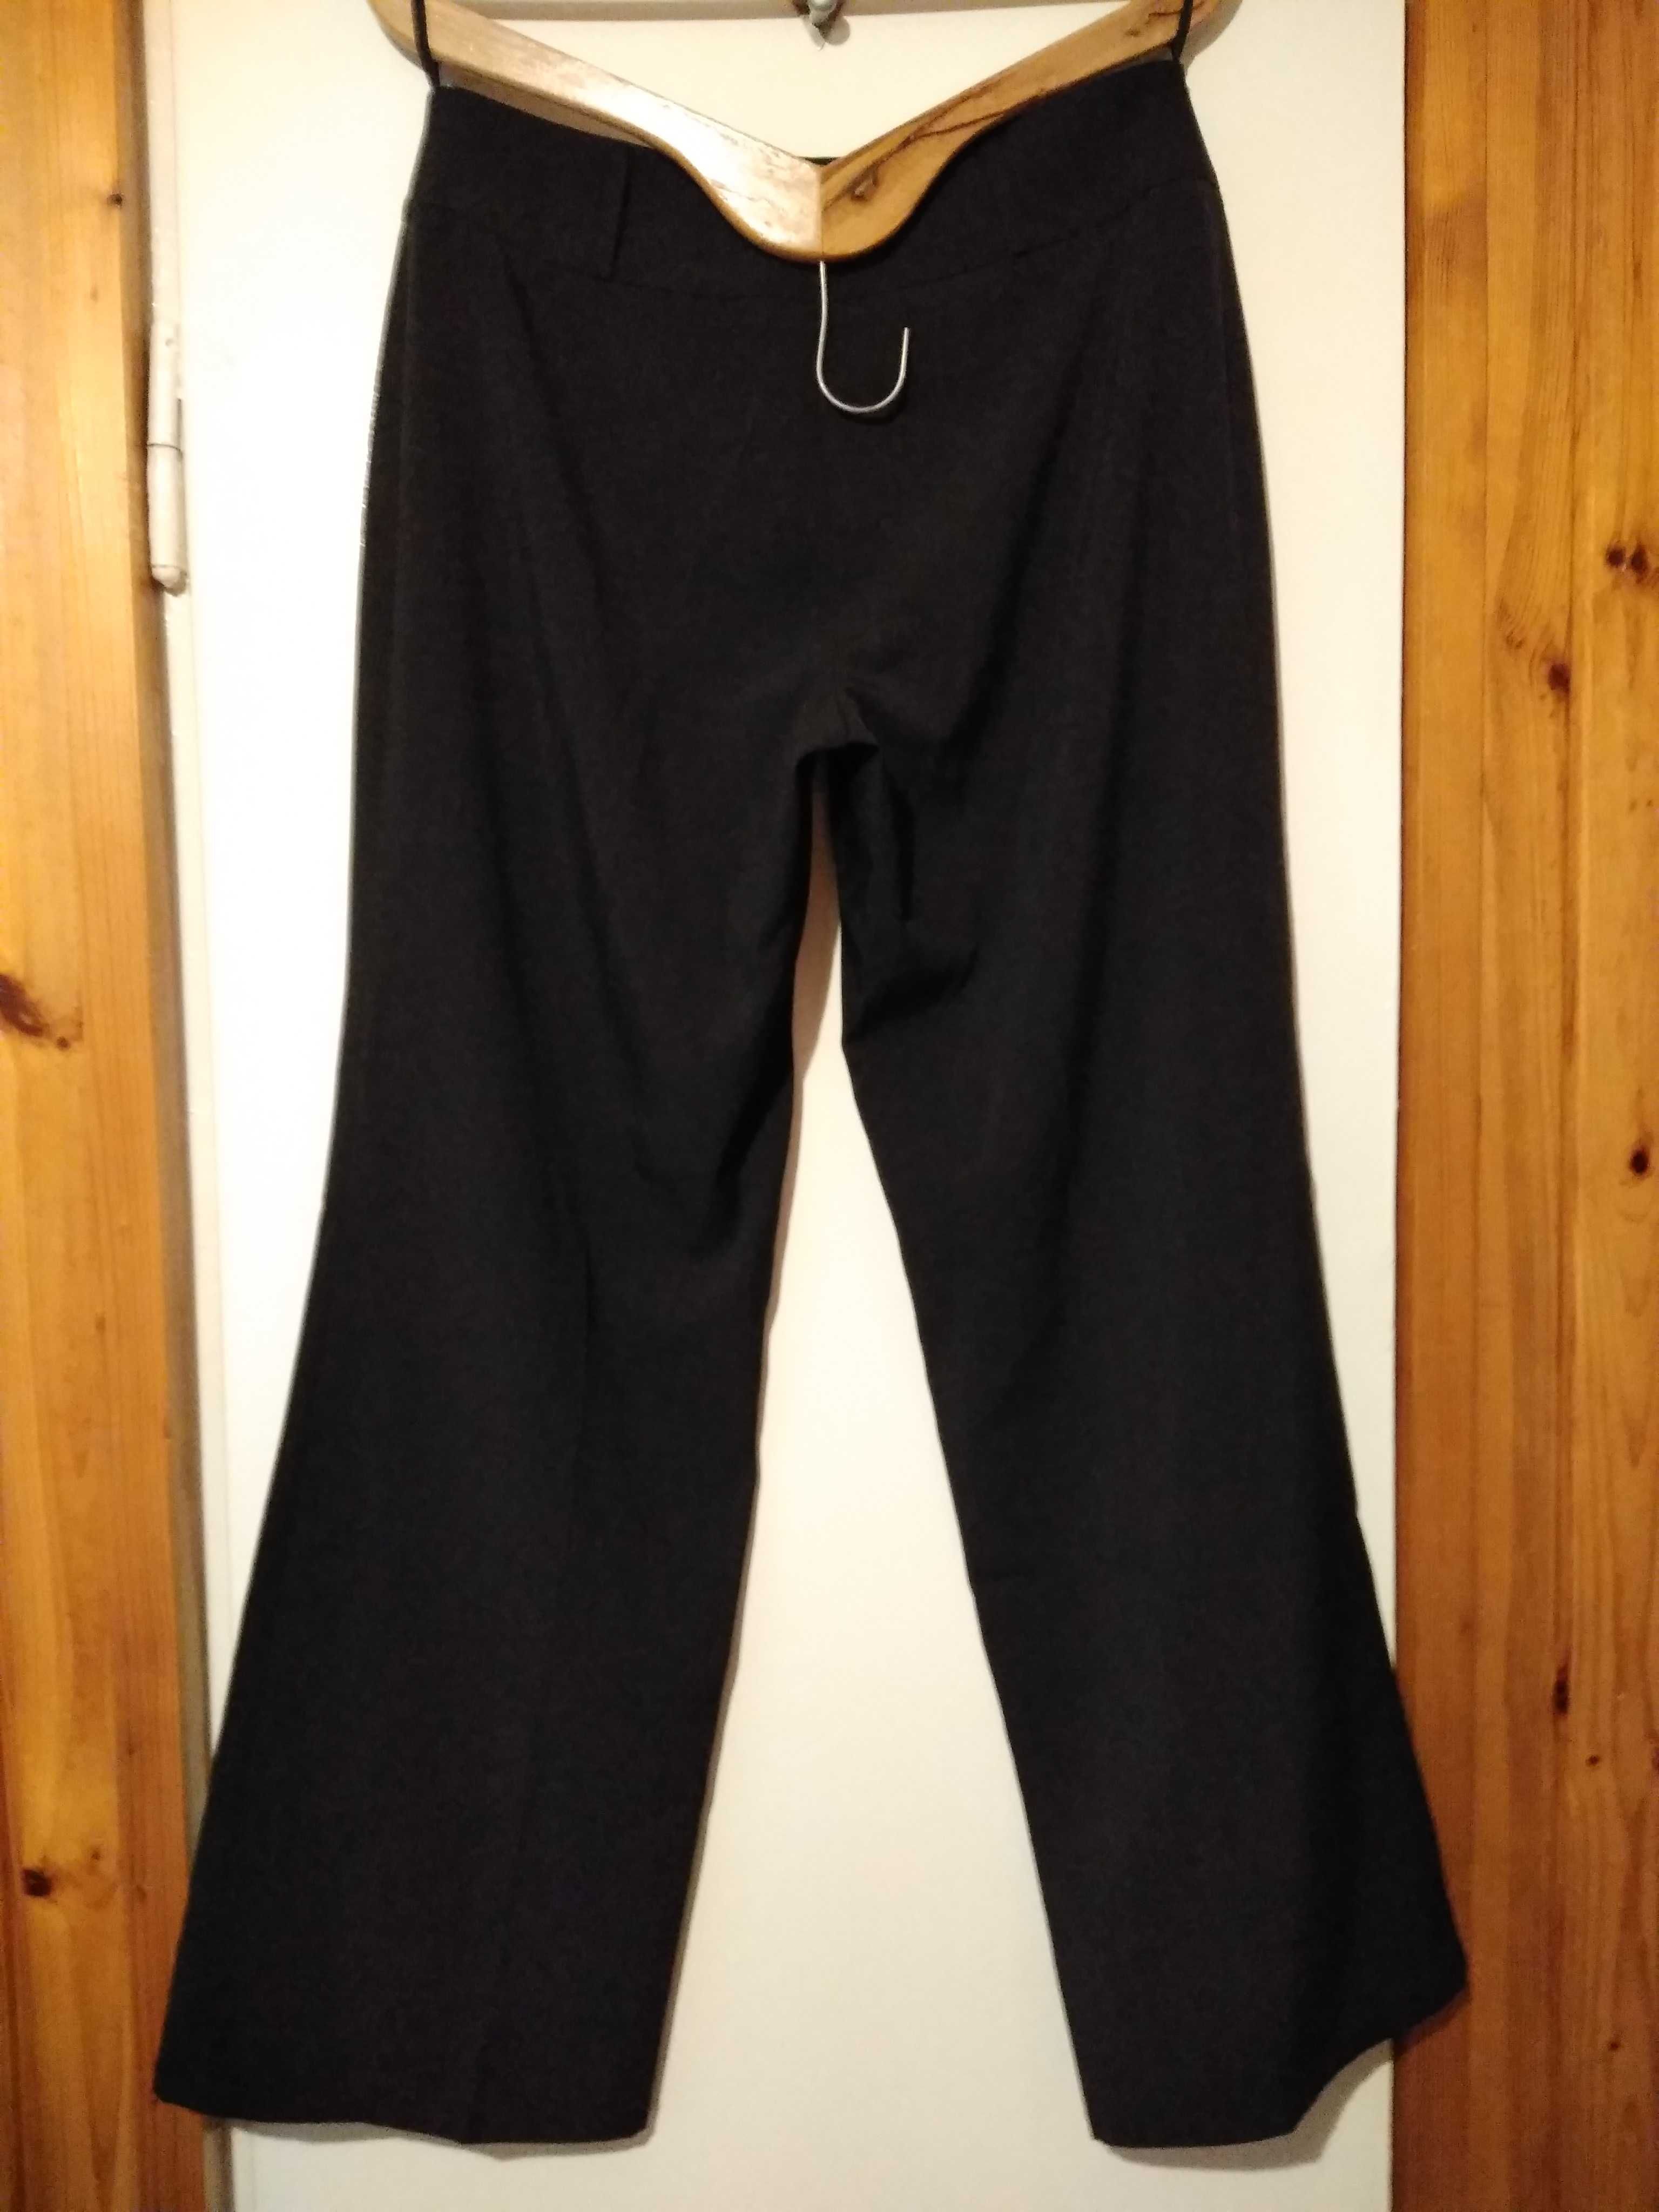 Czarne spodnie wizytowe z kantem, klasyczne, proste rozmiar L